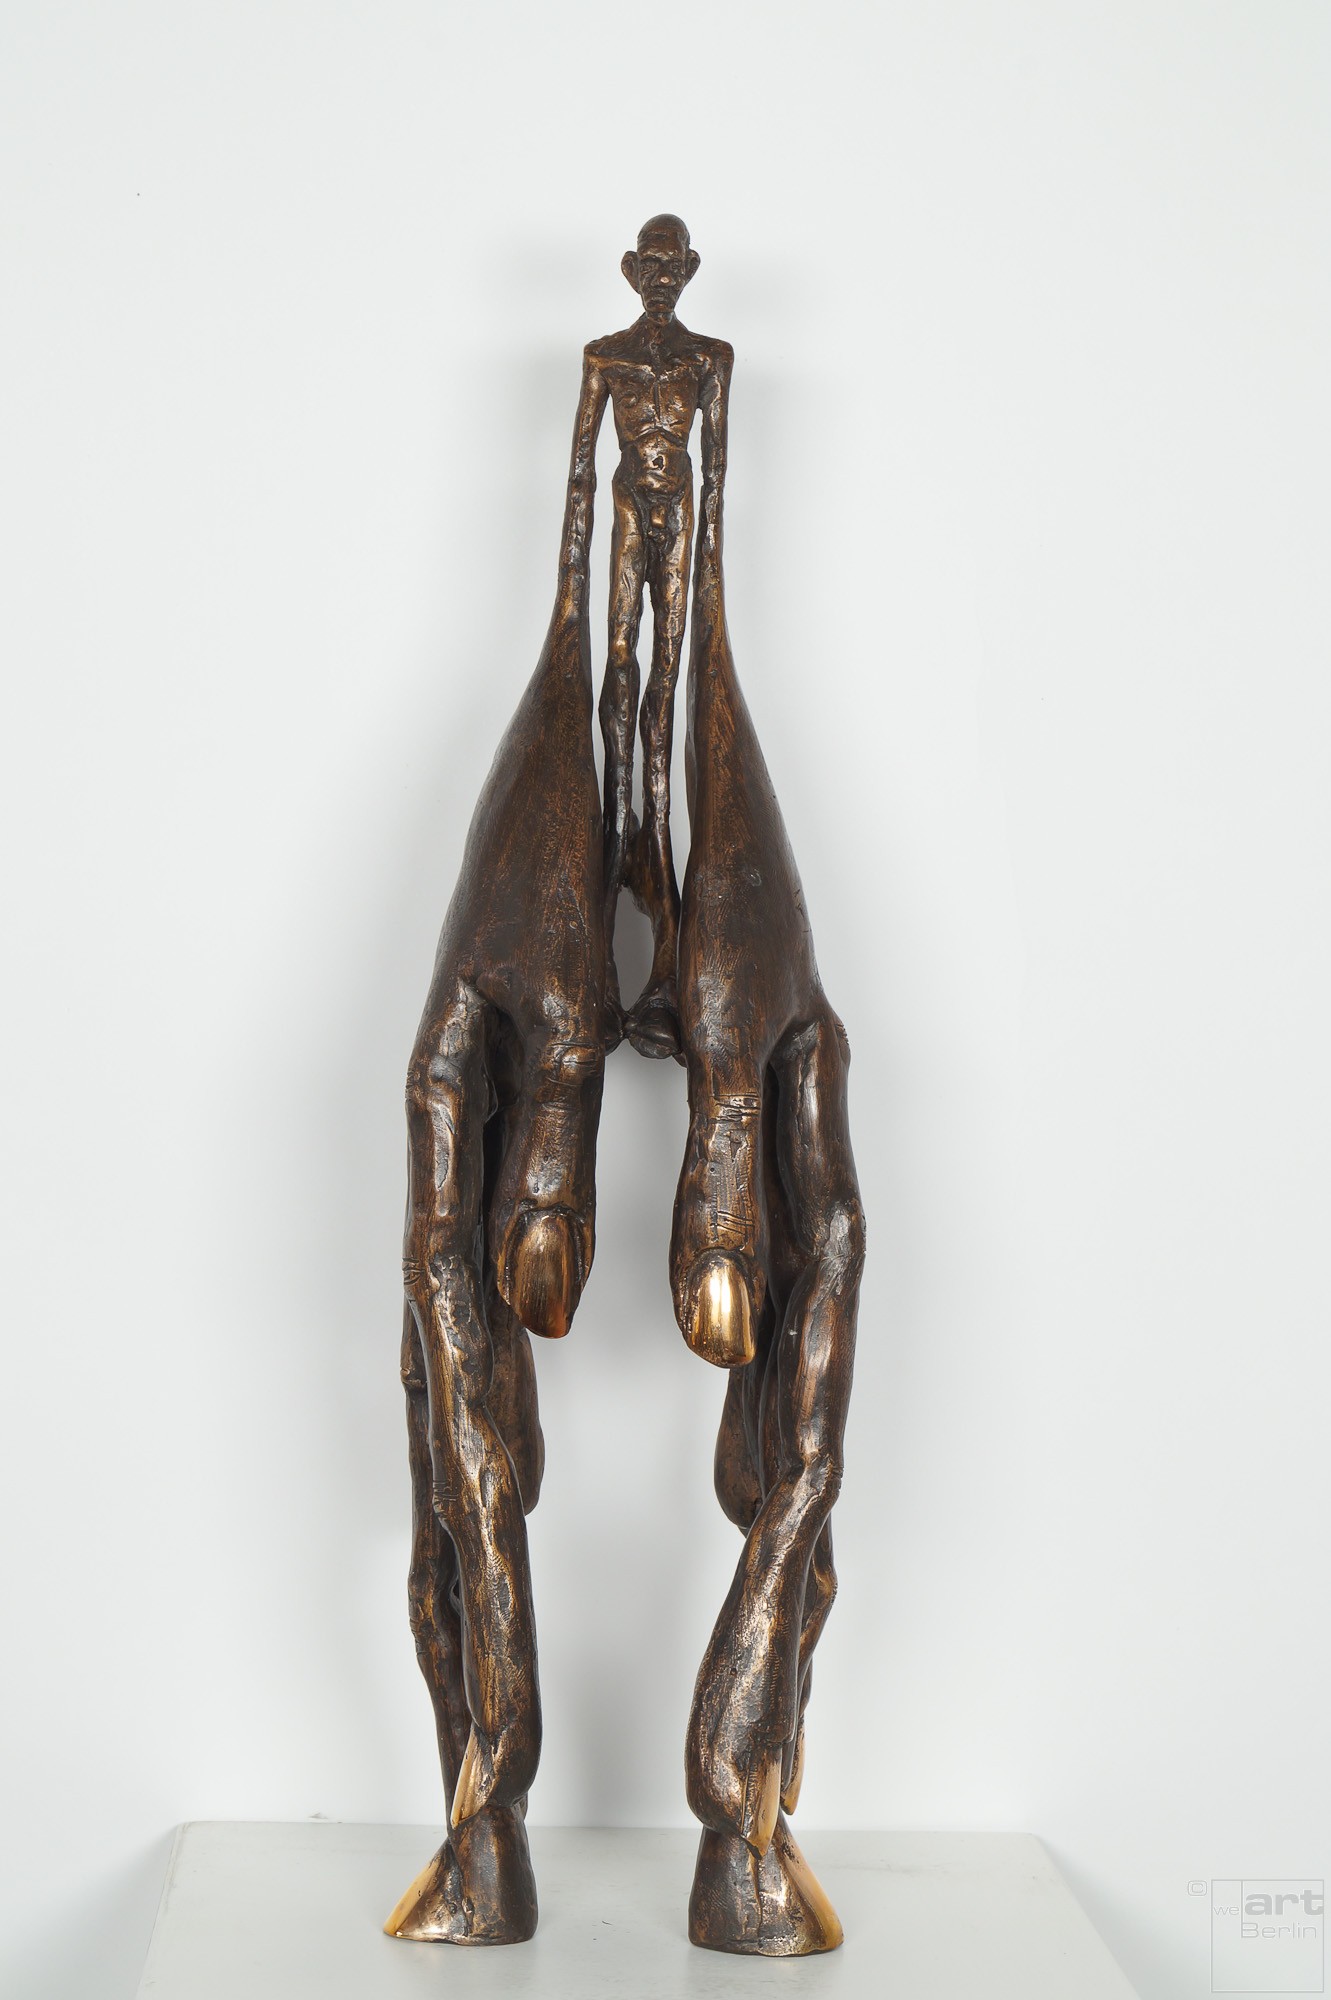 Handlanger - Bronze Plastik, Skulptur von Tim David Trillsam, Edition